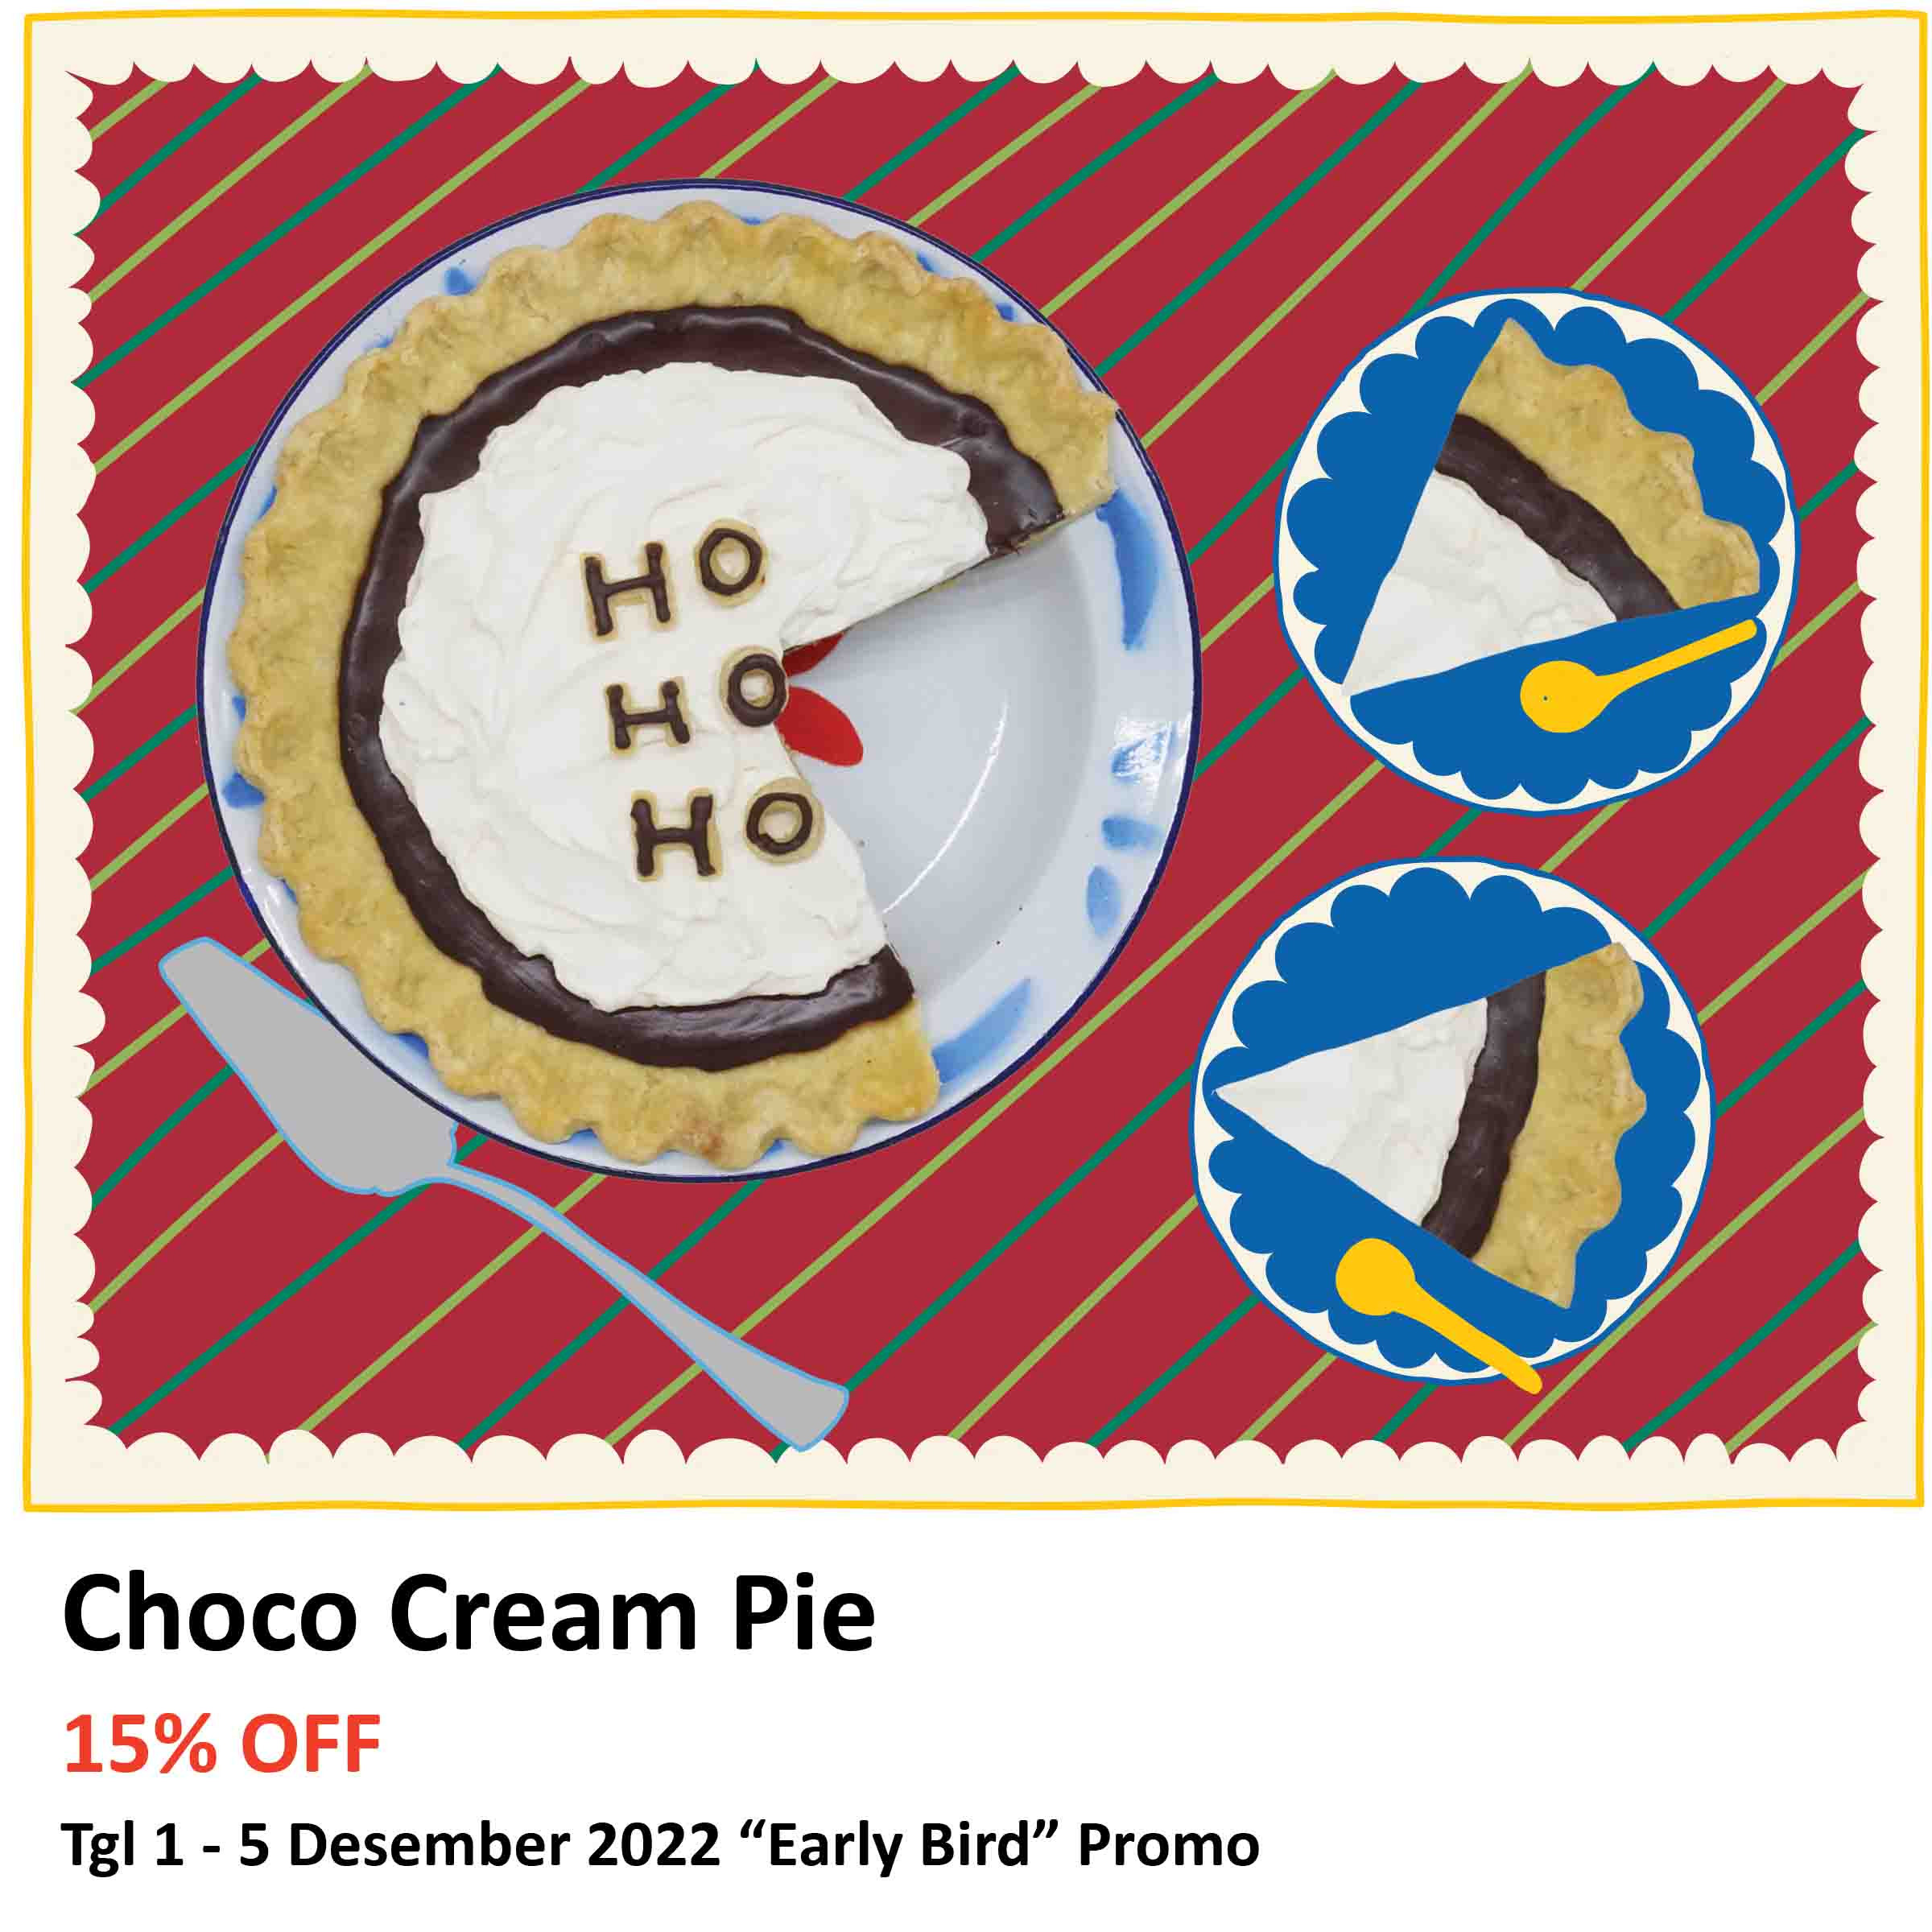 Choco Cream Pie